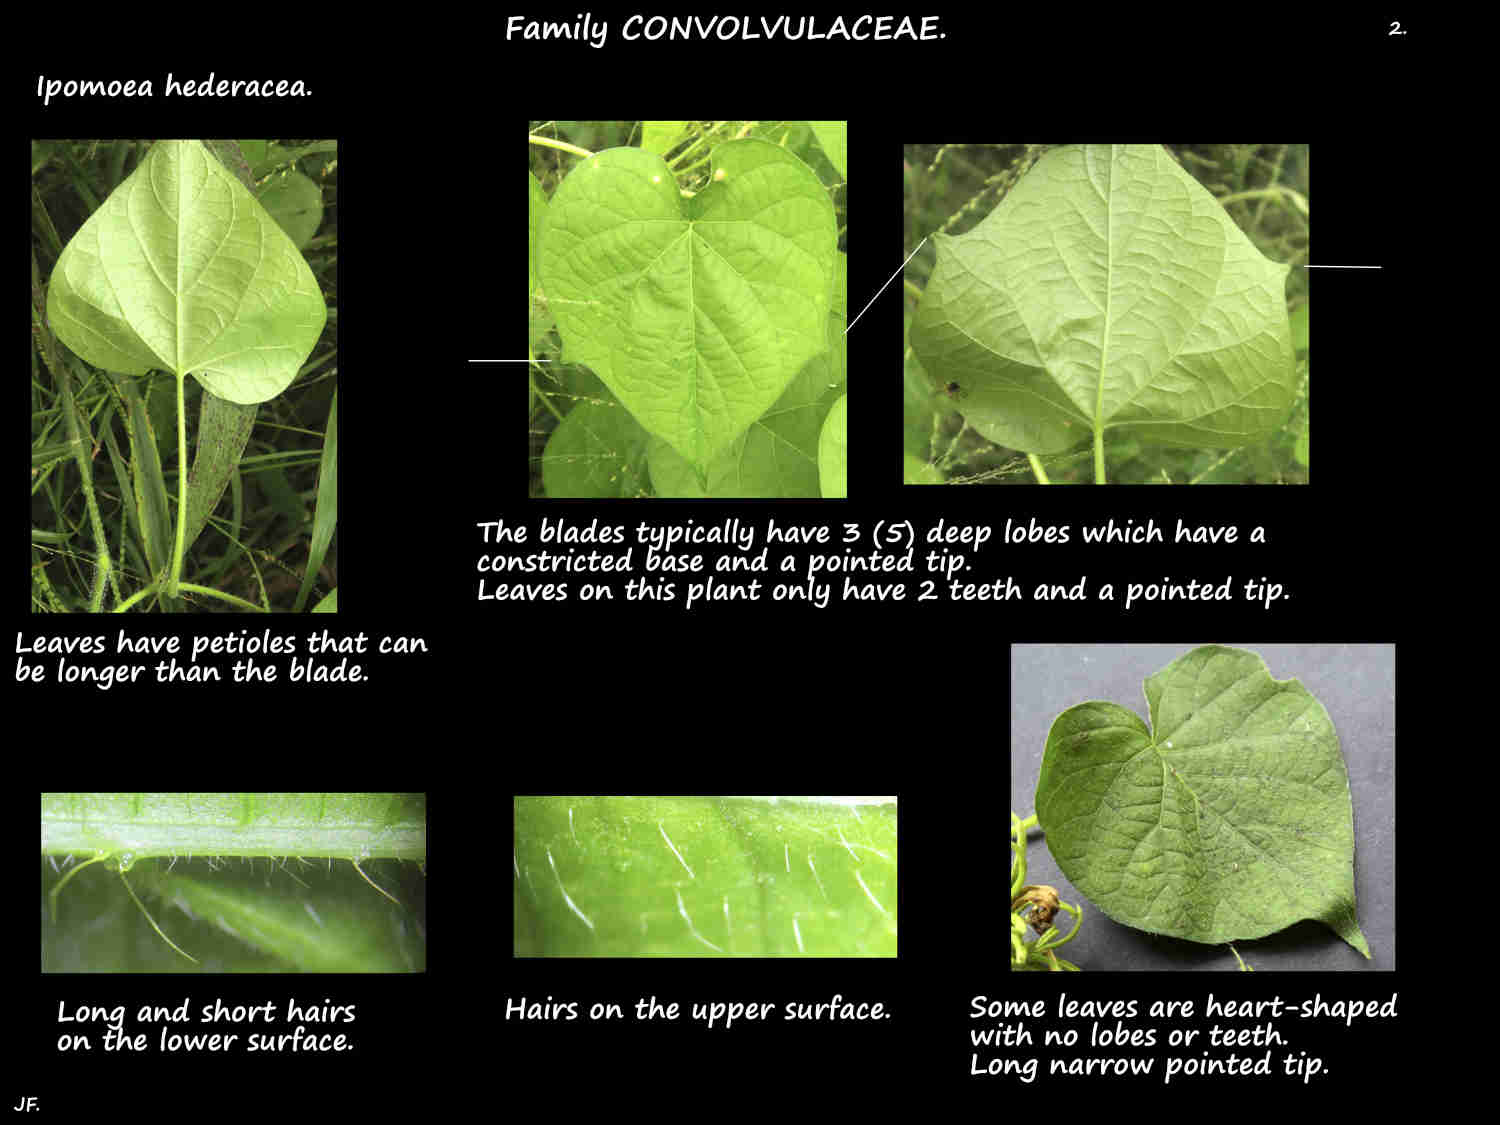 2 Ipomoea hederacea leaves & leaf hairs